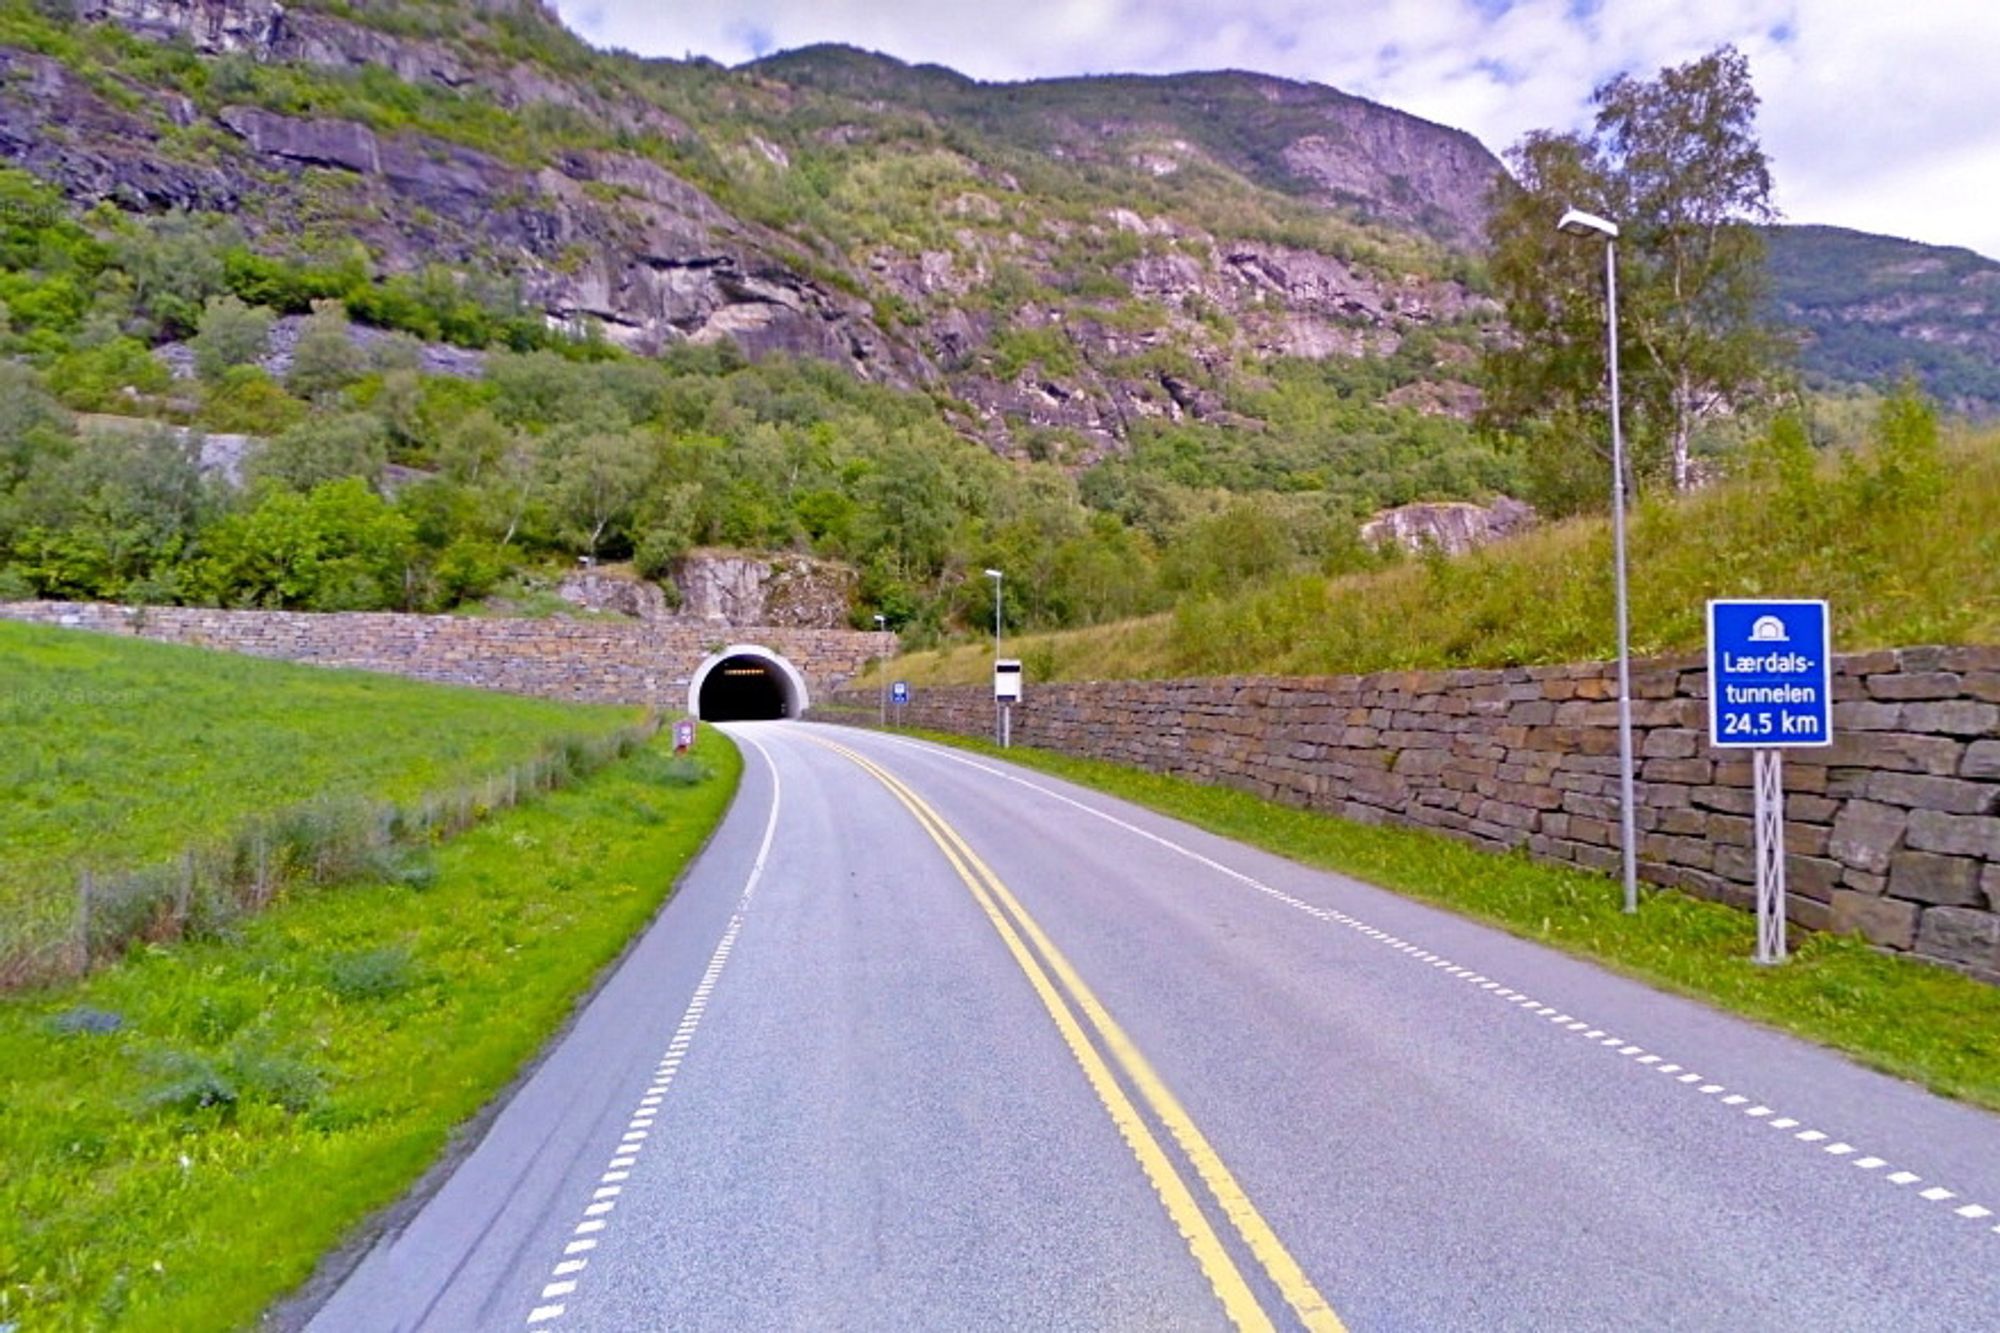 Lærdalstunnelen er en av 20 tunneler i Sogn og Fjordane som skal klargjøres for digitalt nødnett. Her må fem havarinisjer utvides for å gi plass til nye tekniske bygg. (Foto: Google)